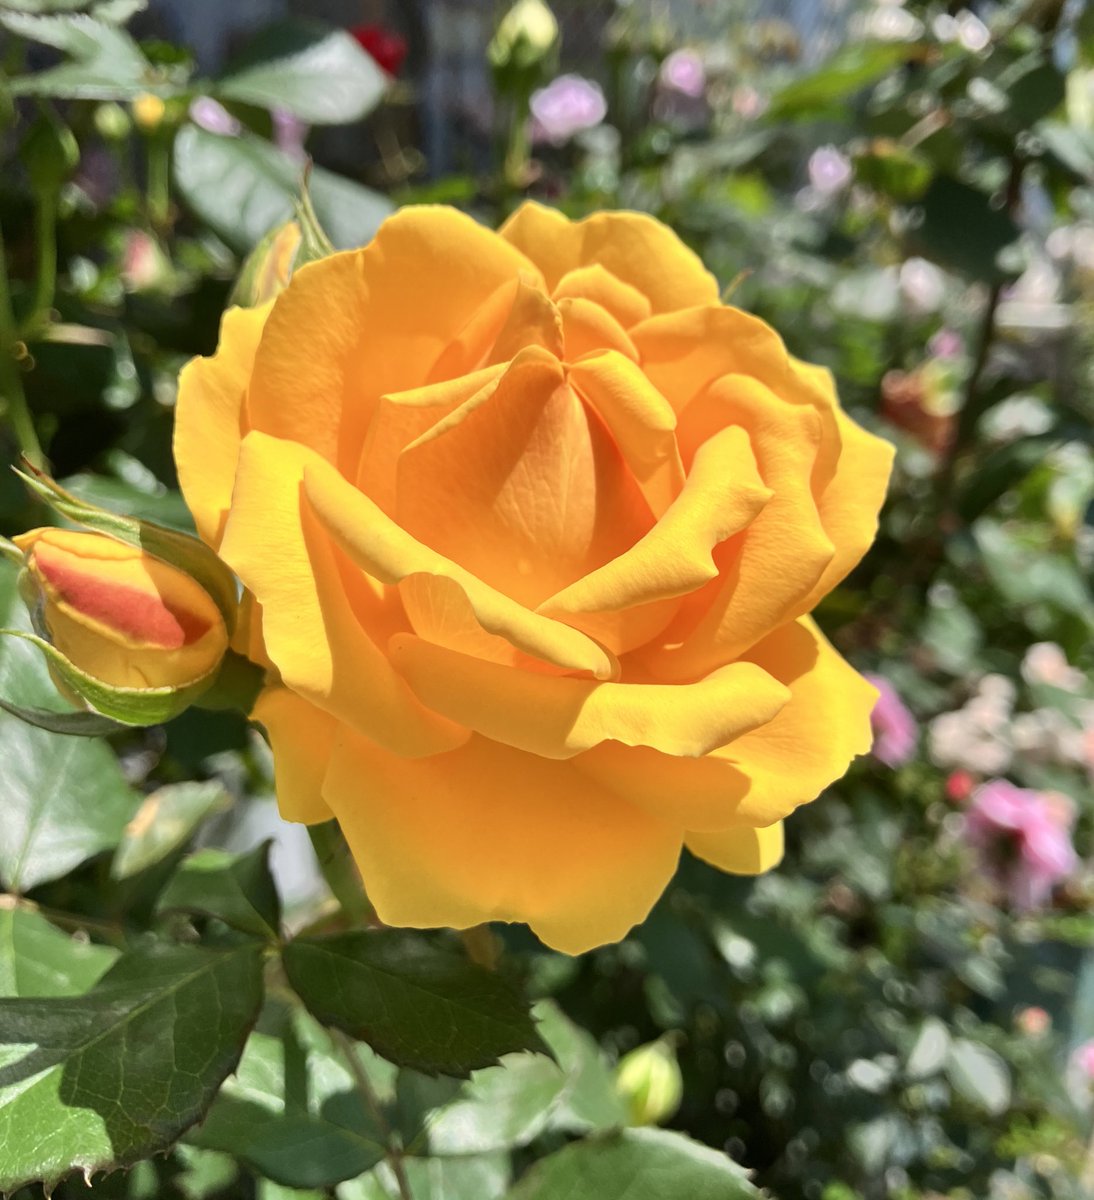 おはようございます。
あっという間に木曜日。
朝から輝きのある黄色い薔薇にエネルギーをもらいましょう。　上向きの蕾からまた花が咲きますね。

少し季節の針が巻き戻ったような寒い朝、
風引かないように気をつけていきたいと思います。

#キリトリノセカイ 
#TLを花で一杯にしよう